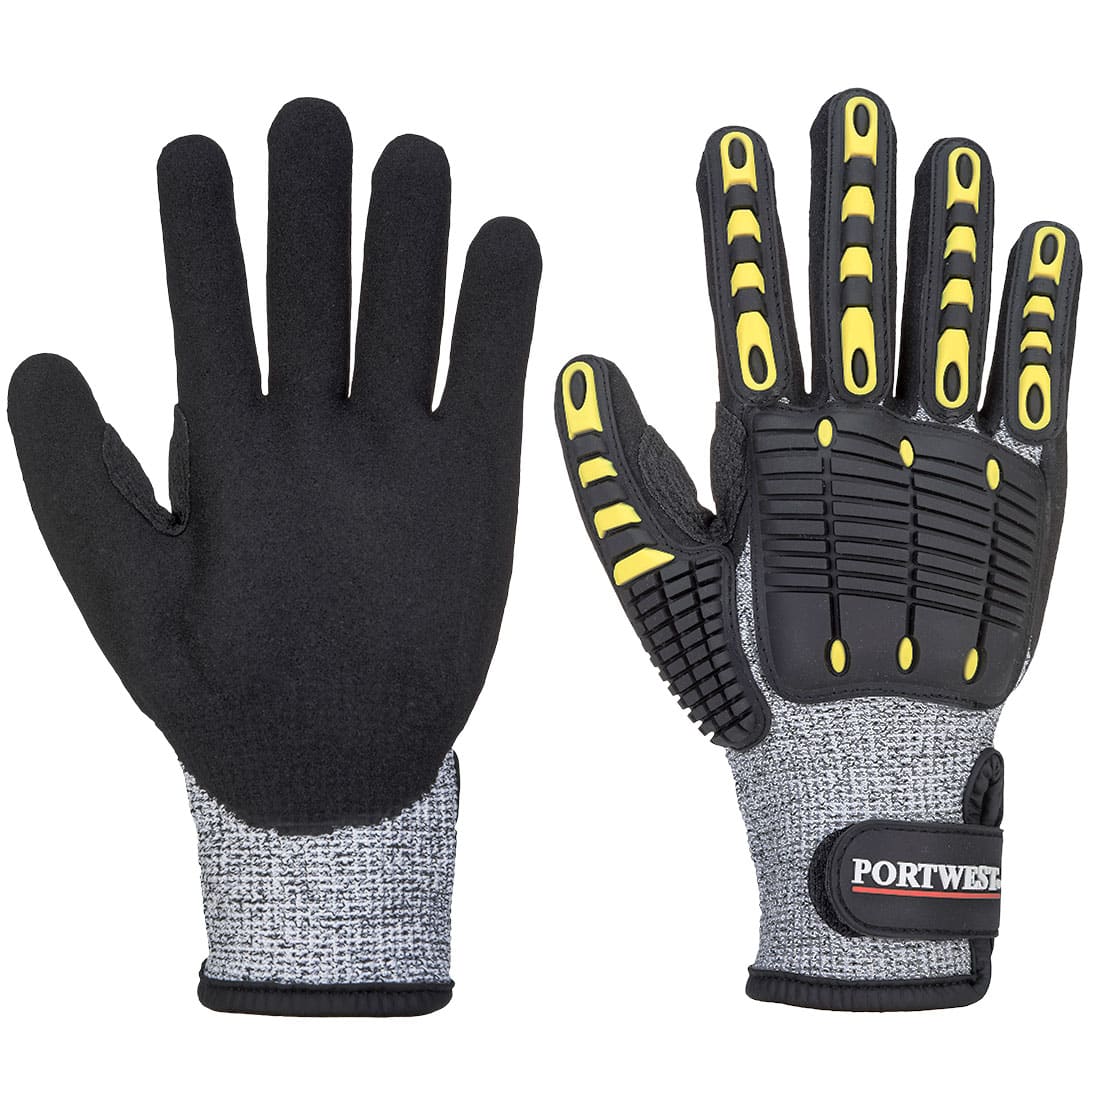 Portwest Anti Impact Cut Resistant Gloves